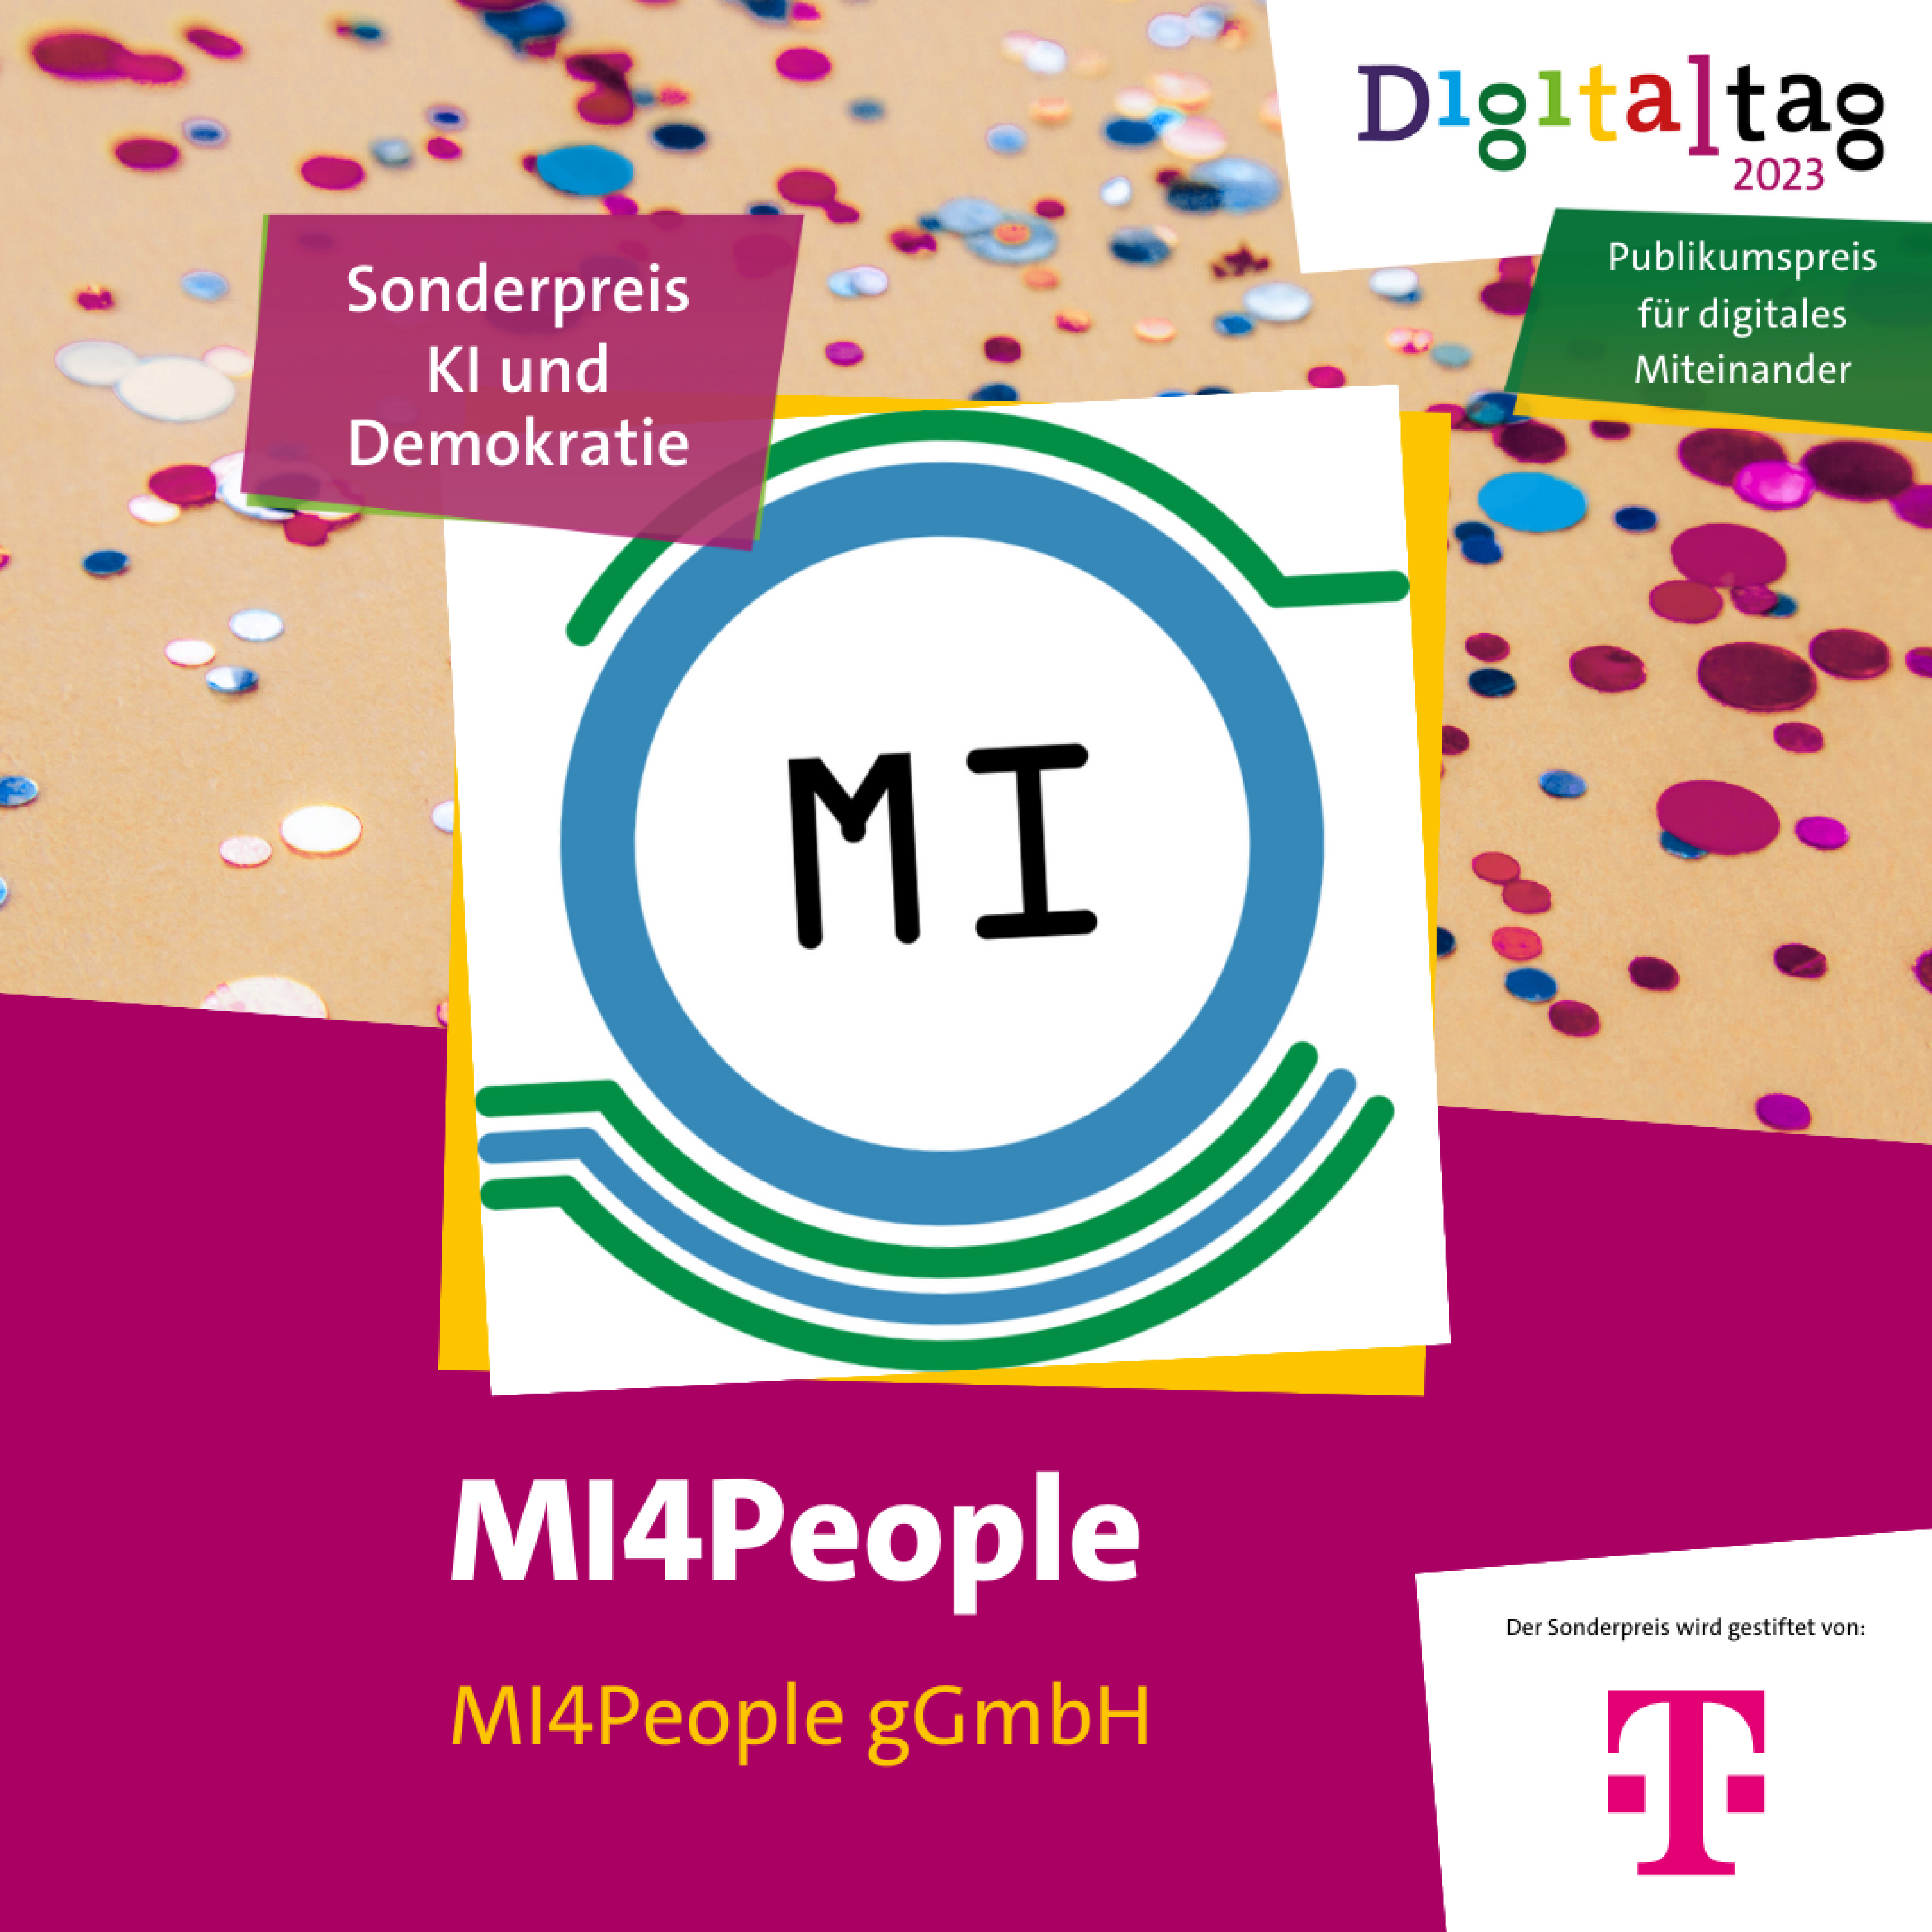 MI4People - wir entwickeln KI für das Gemeinwohl